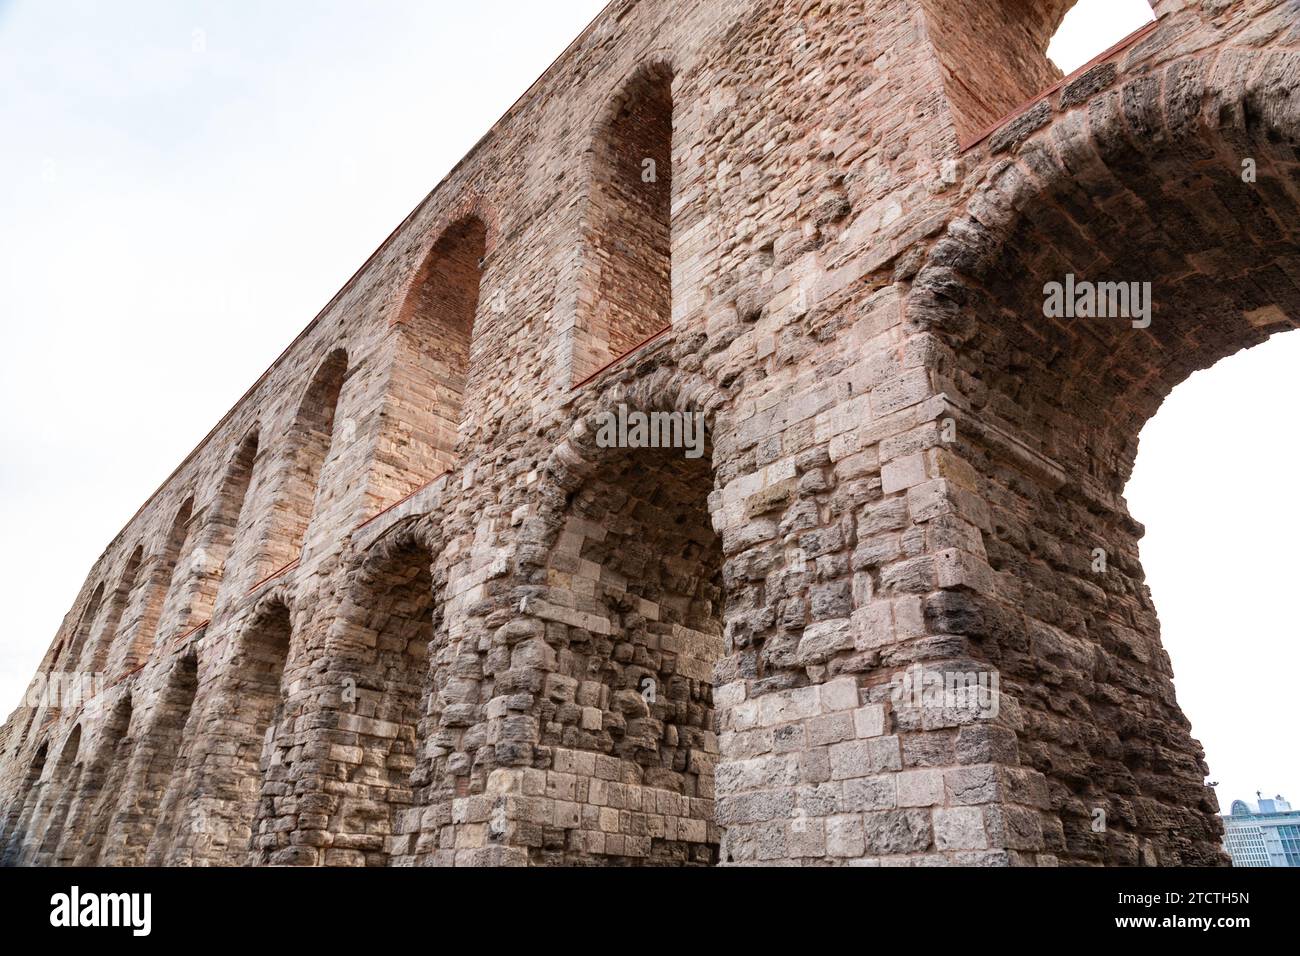 Das Aquädukt von Valens war ein römisches Aquäduktsystem, das Ende des 4. Jahrhunderts n. Chr. erbaut wurde, um Konstantinopel, die Hauptstadt des östlichen Rom, mit Wasser zu versorgen Stockfoto